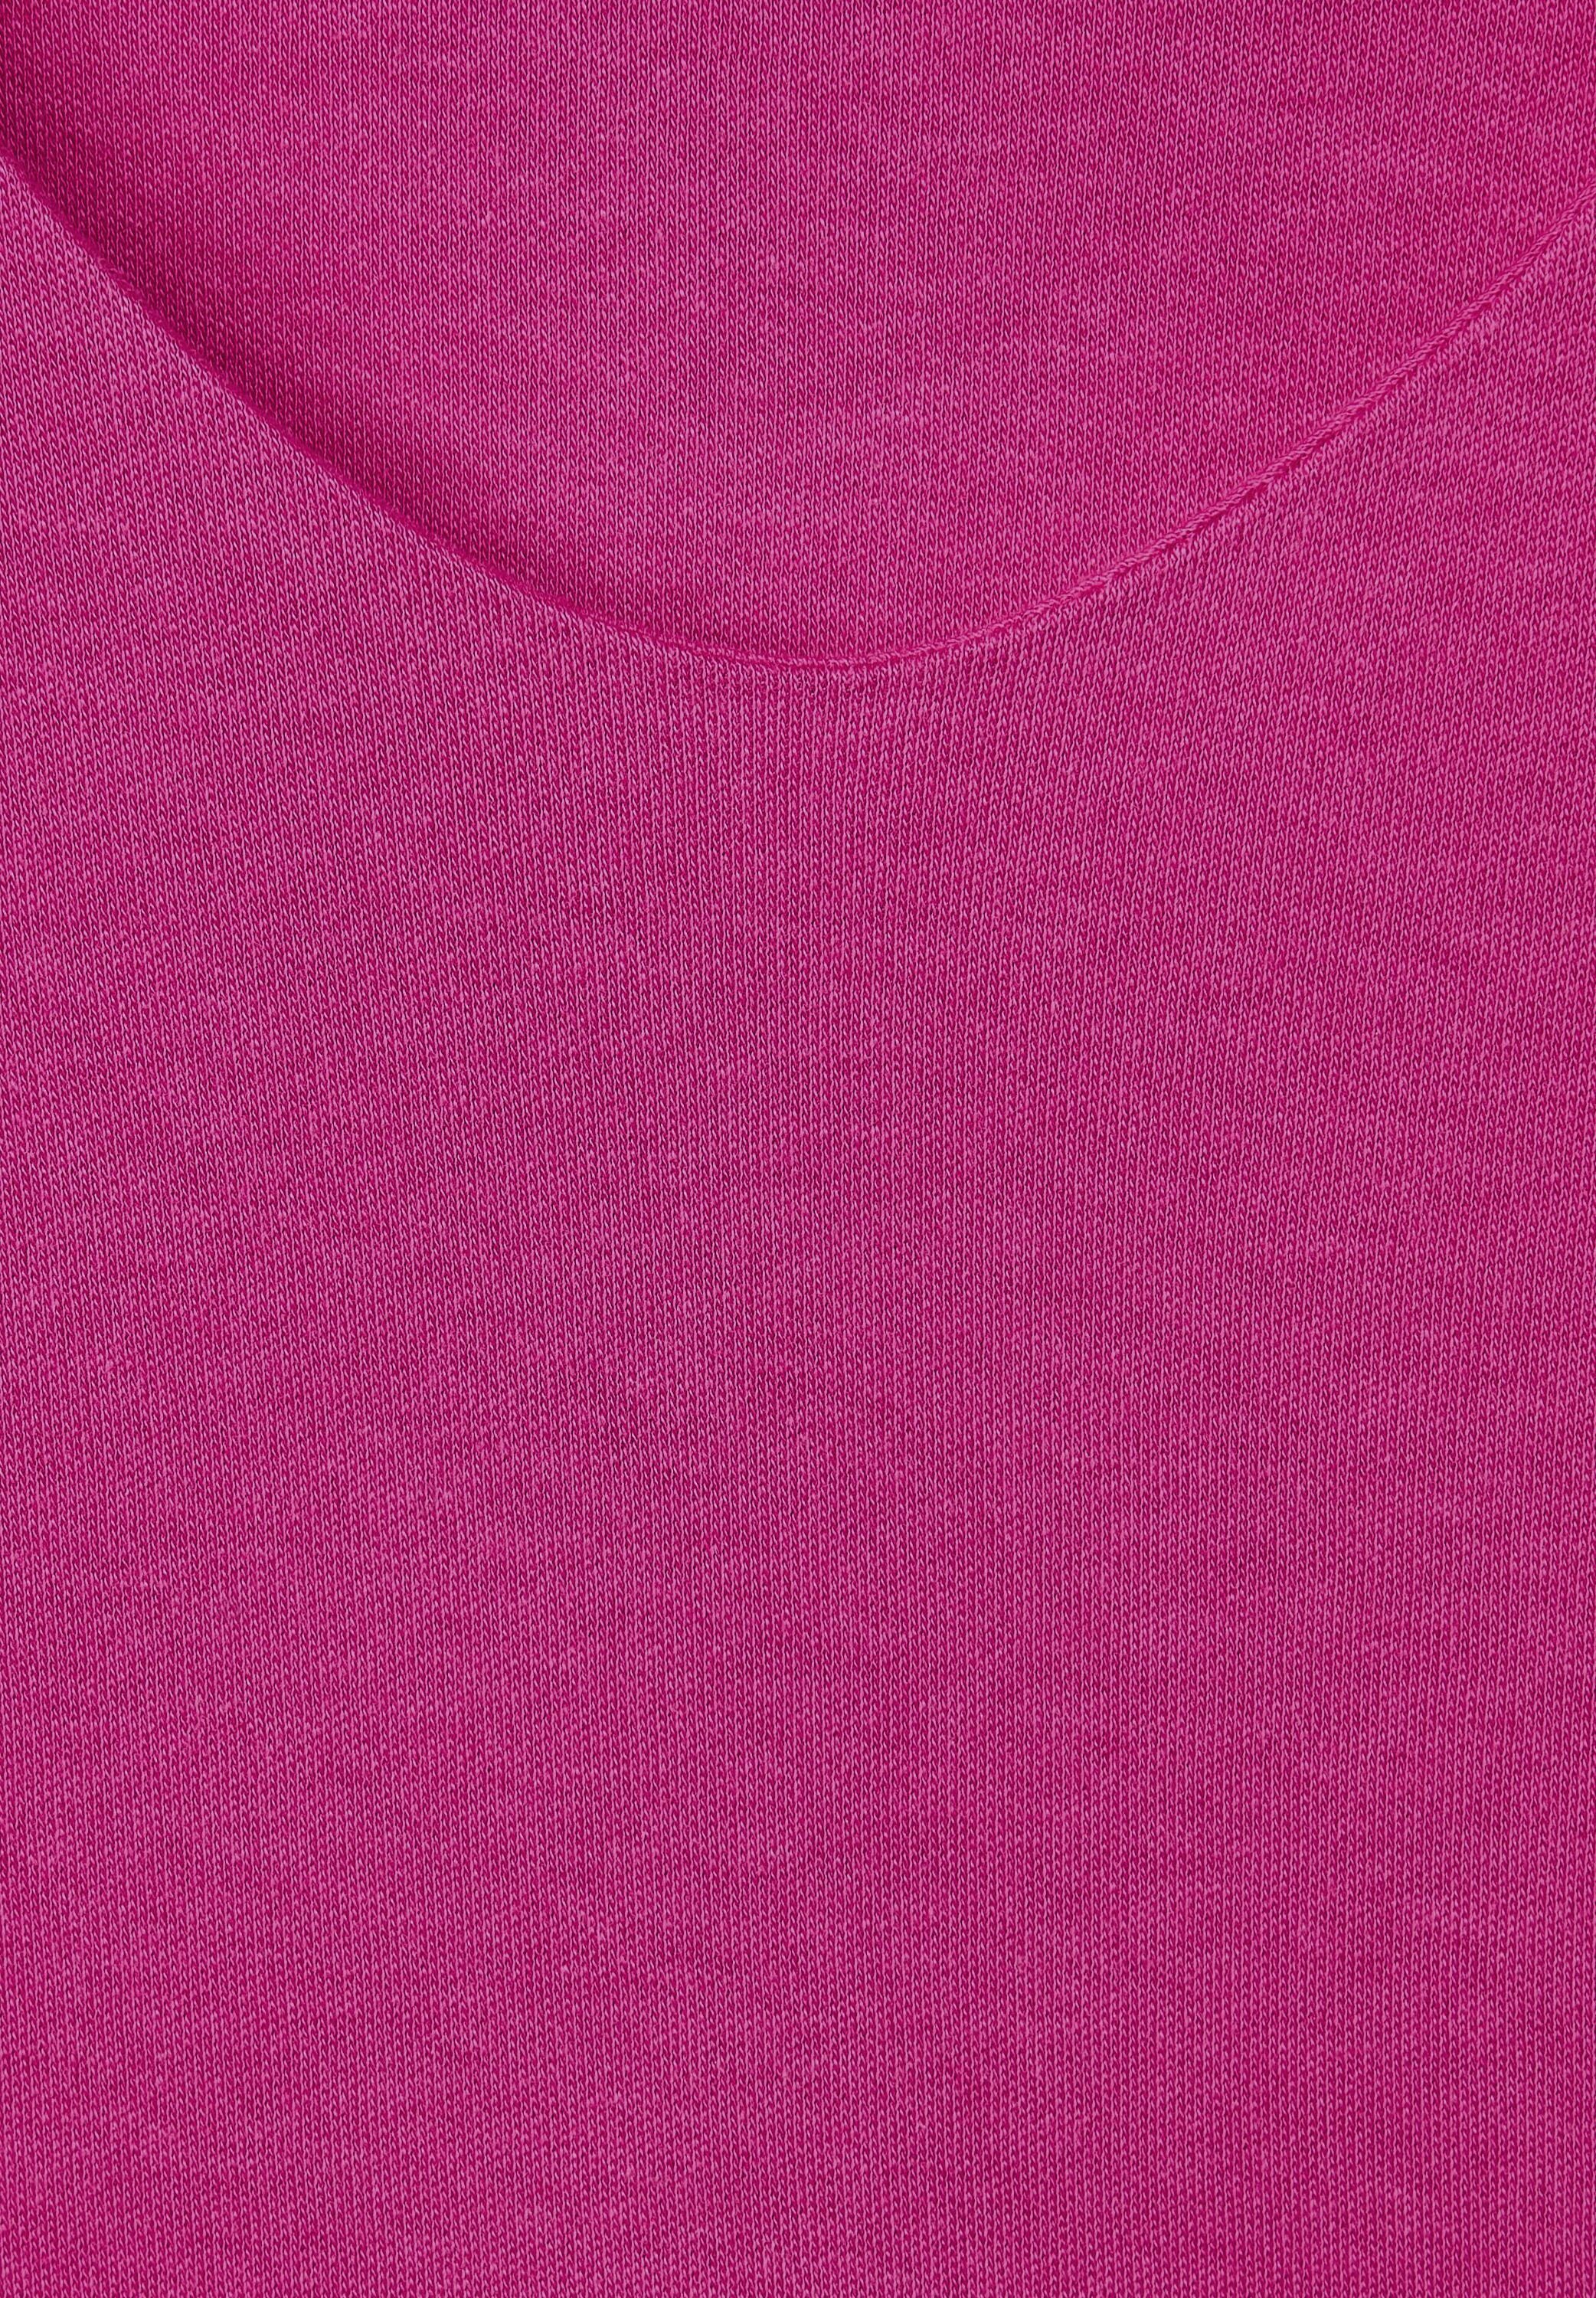 STREET T-Shirt ONE V-Ausschnitt cozy mit pink bright